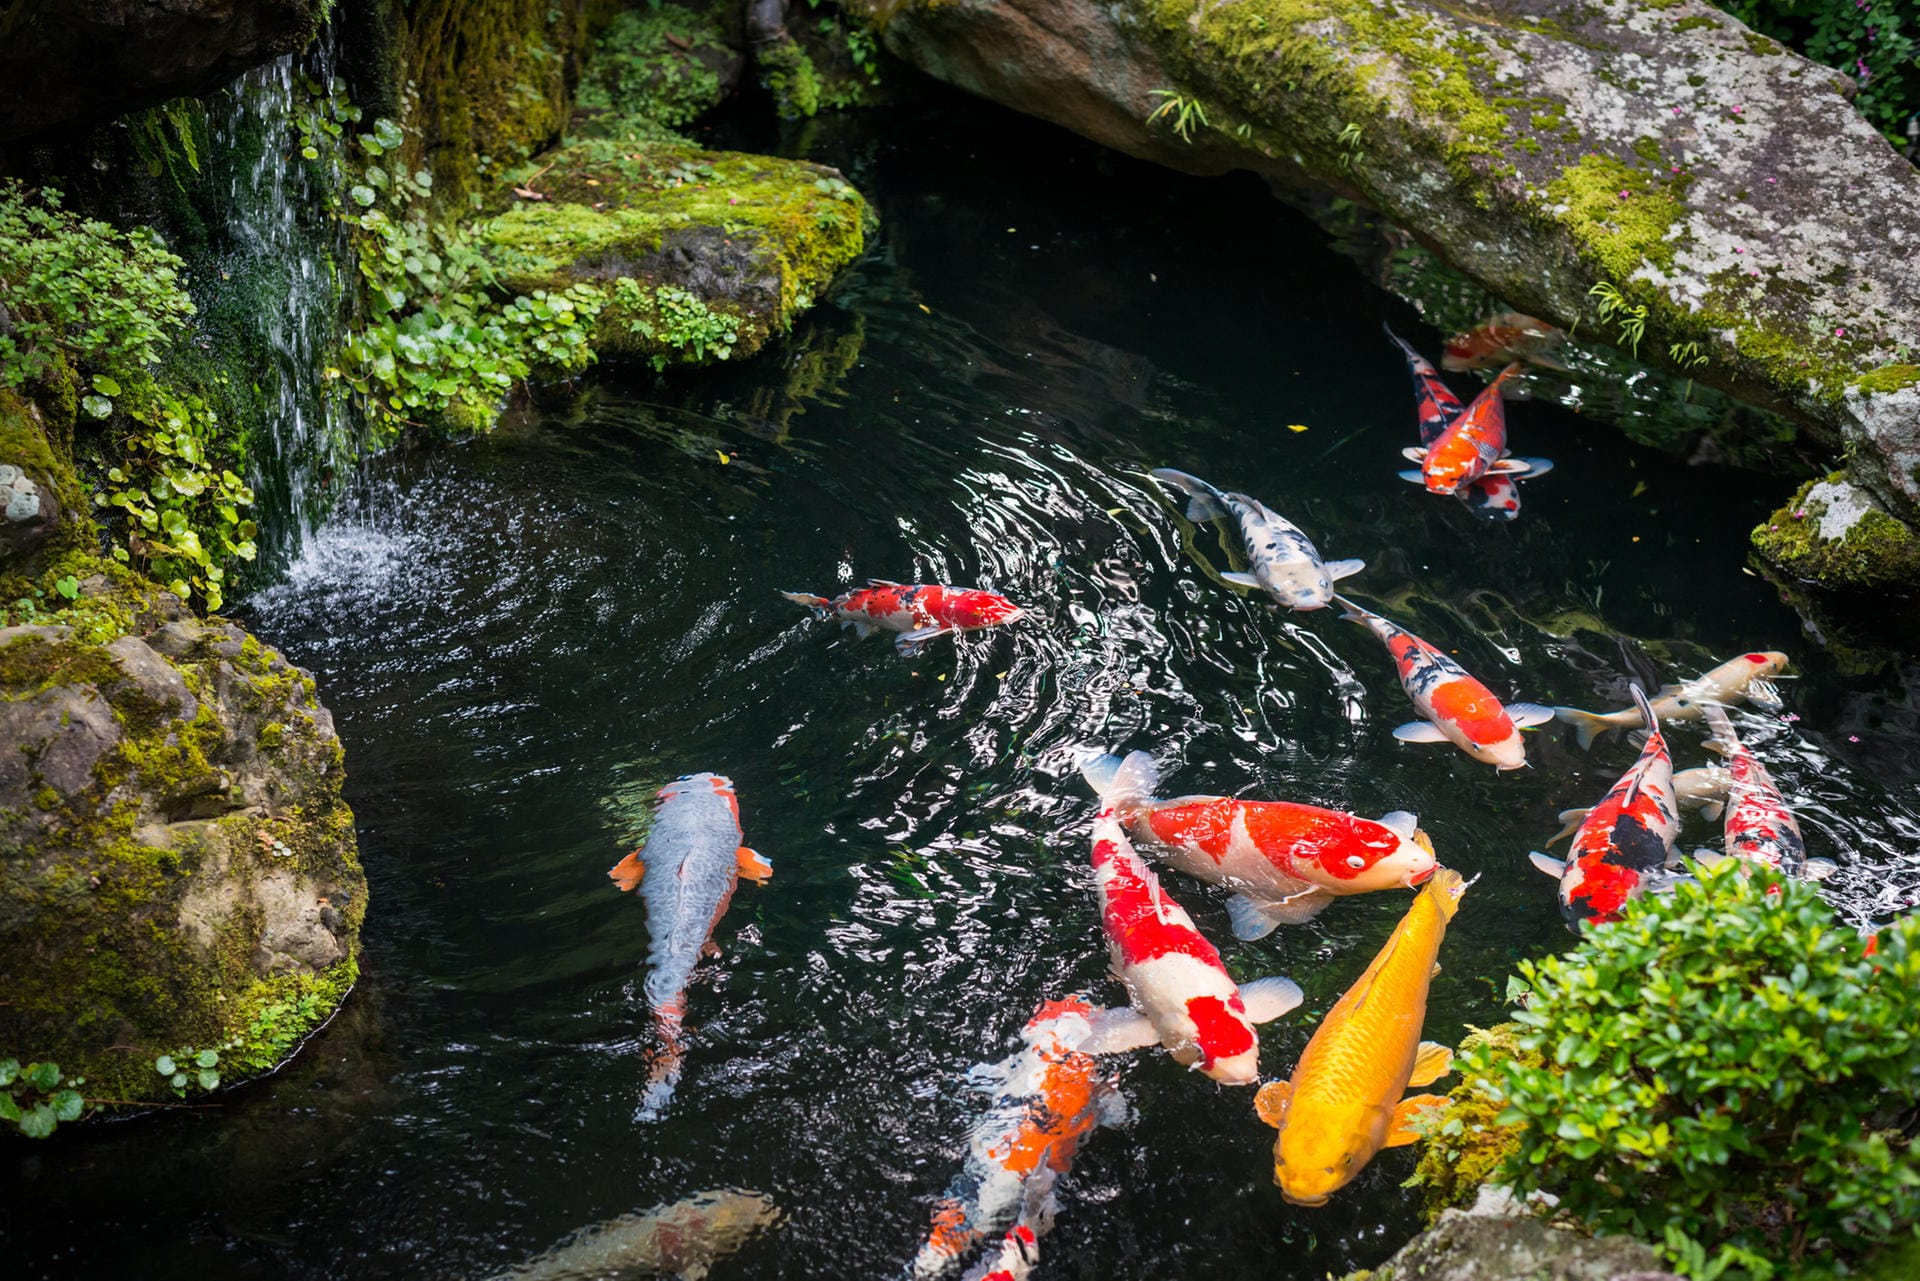 Fische sind ein Highlight in jedem Gartenteich. Achten Sie aber darauf, dass Sie nicht zu viele Fische im Teich halten.